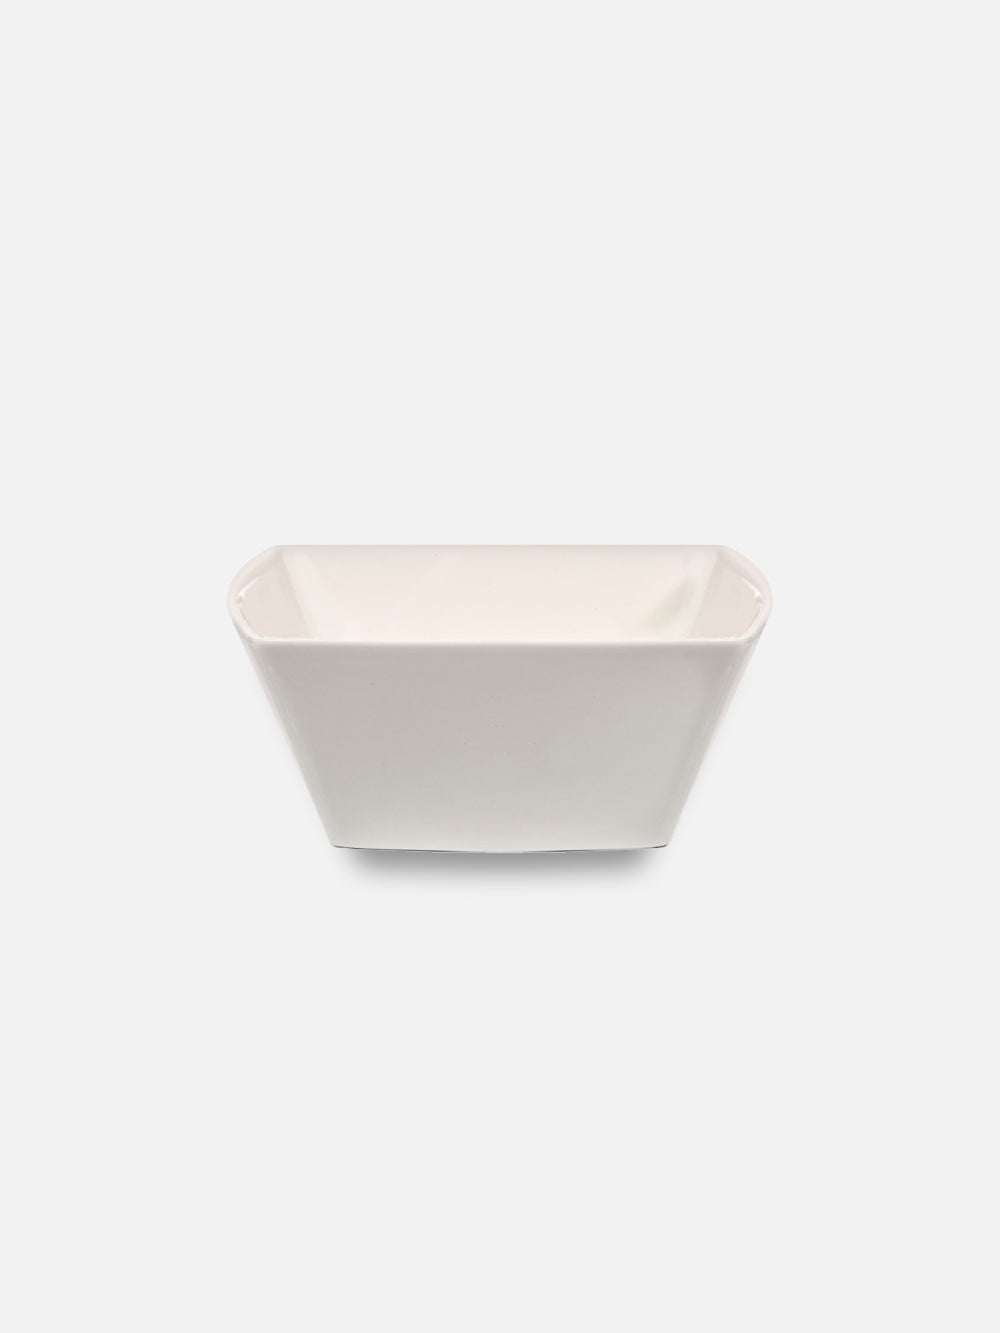 Square bowl